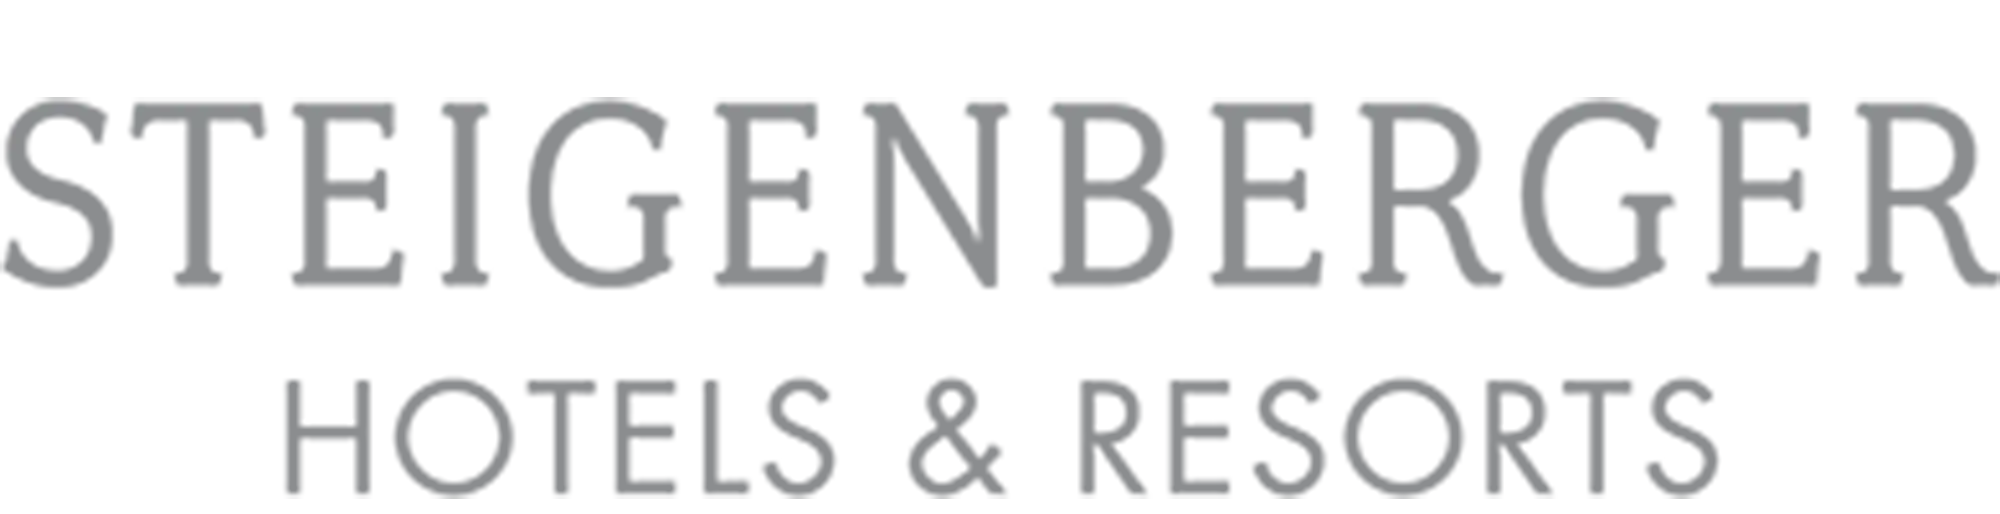 Steigenberger Hotels & Resorts Logo in grauer Schrift